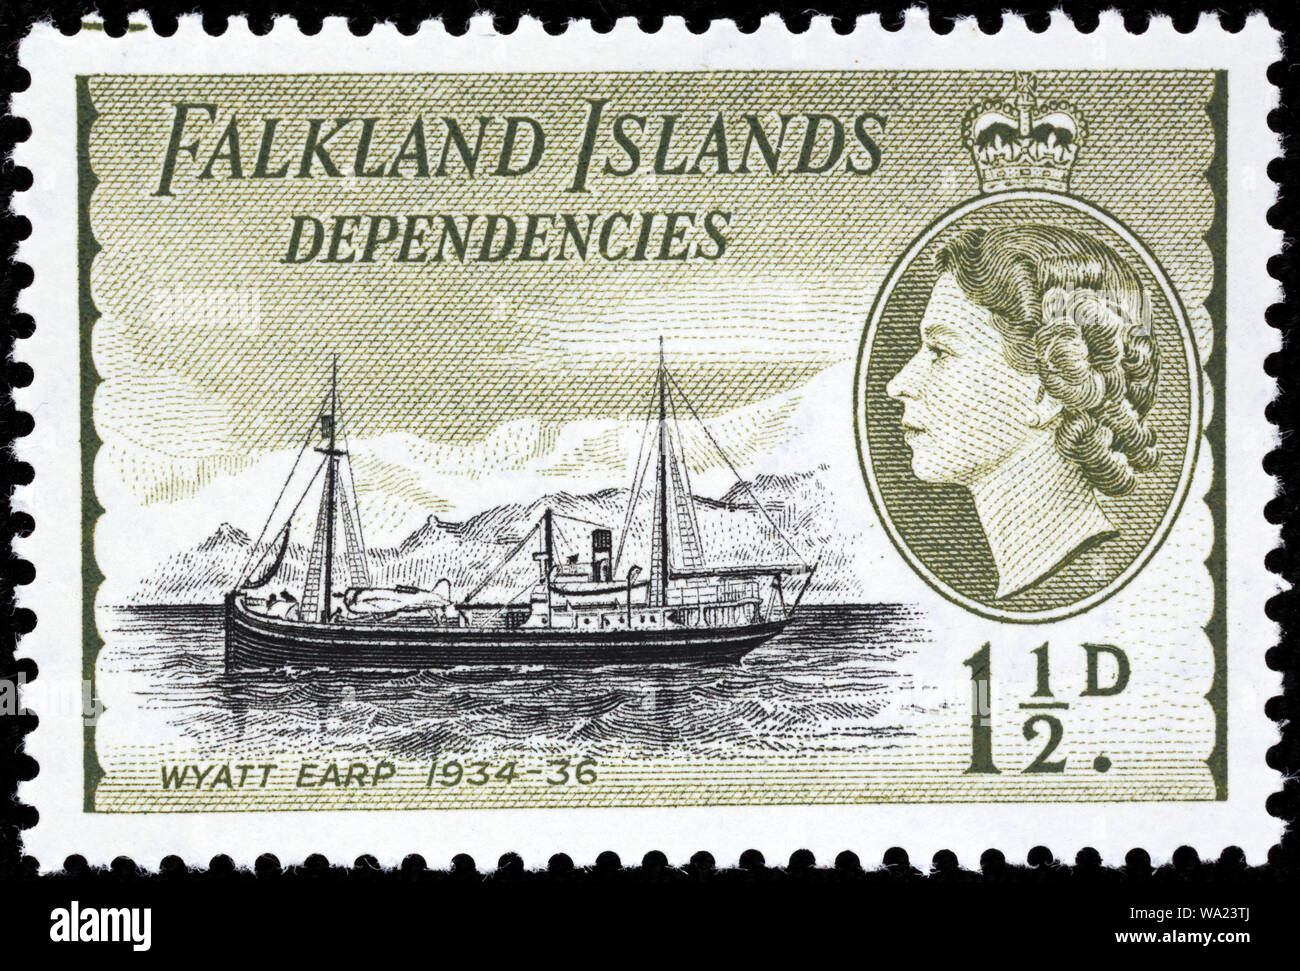 Wyatt Earp, 1934-1936, timbre-poste, les dépendances des îles Falkland, 1954 Banque D'Images